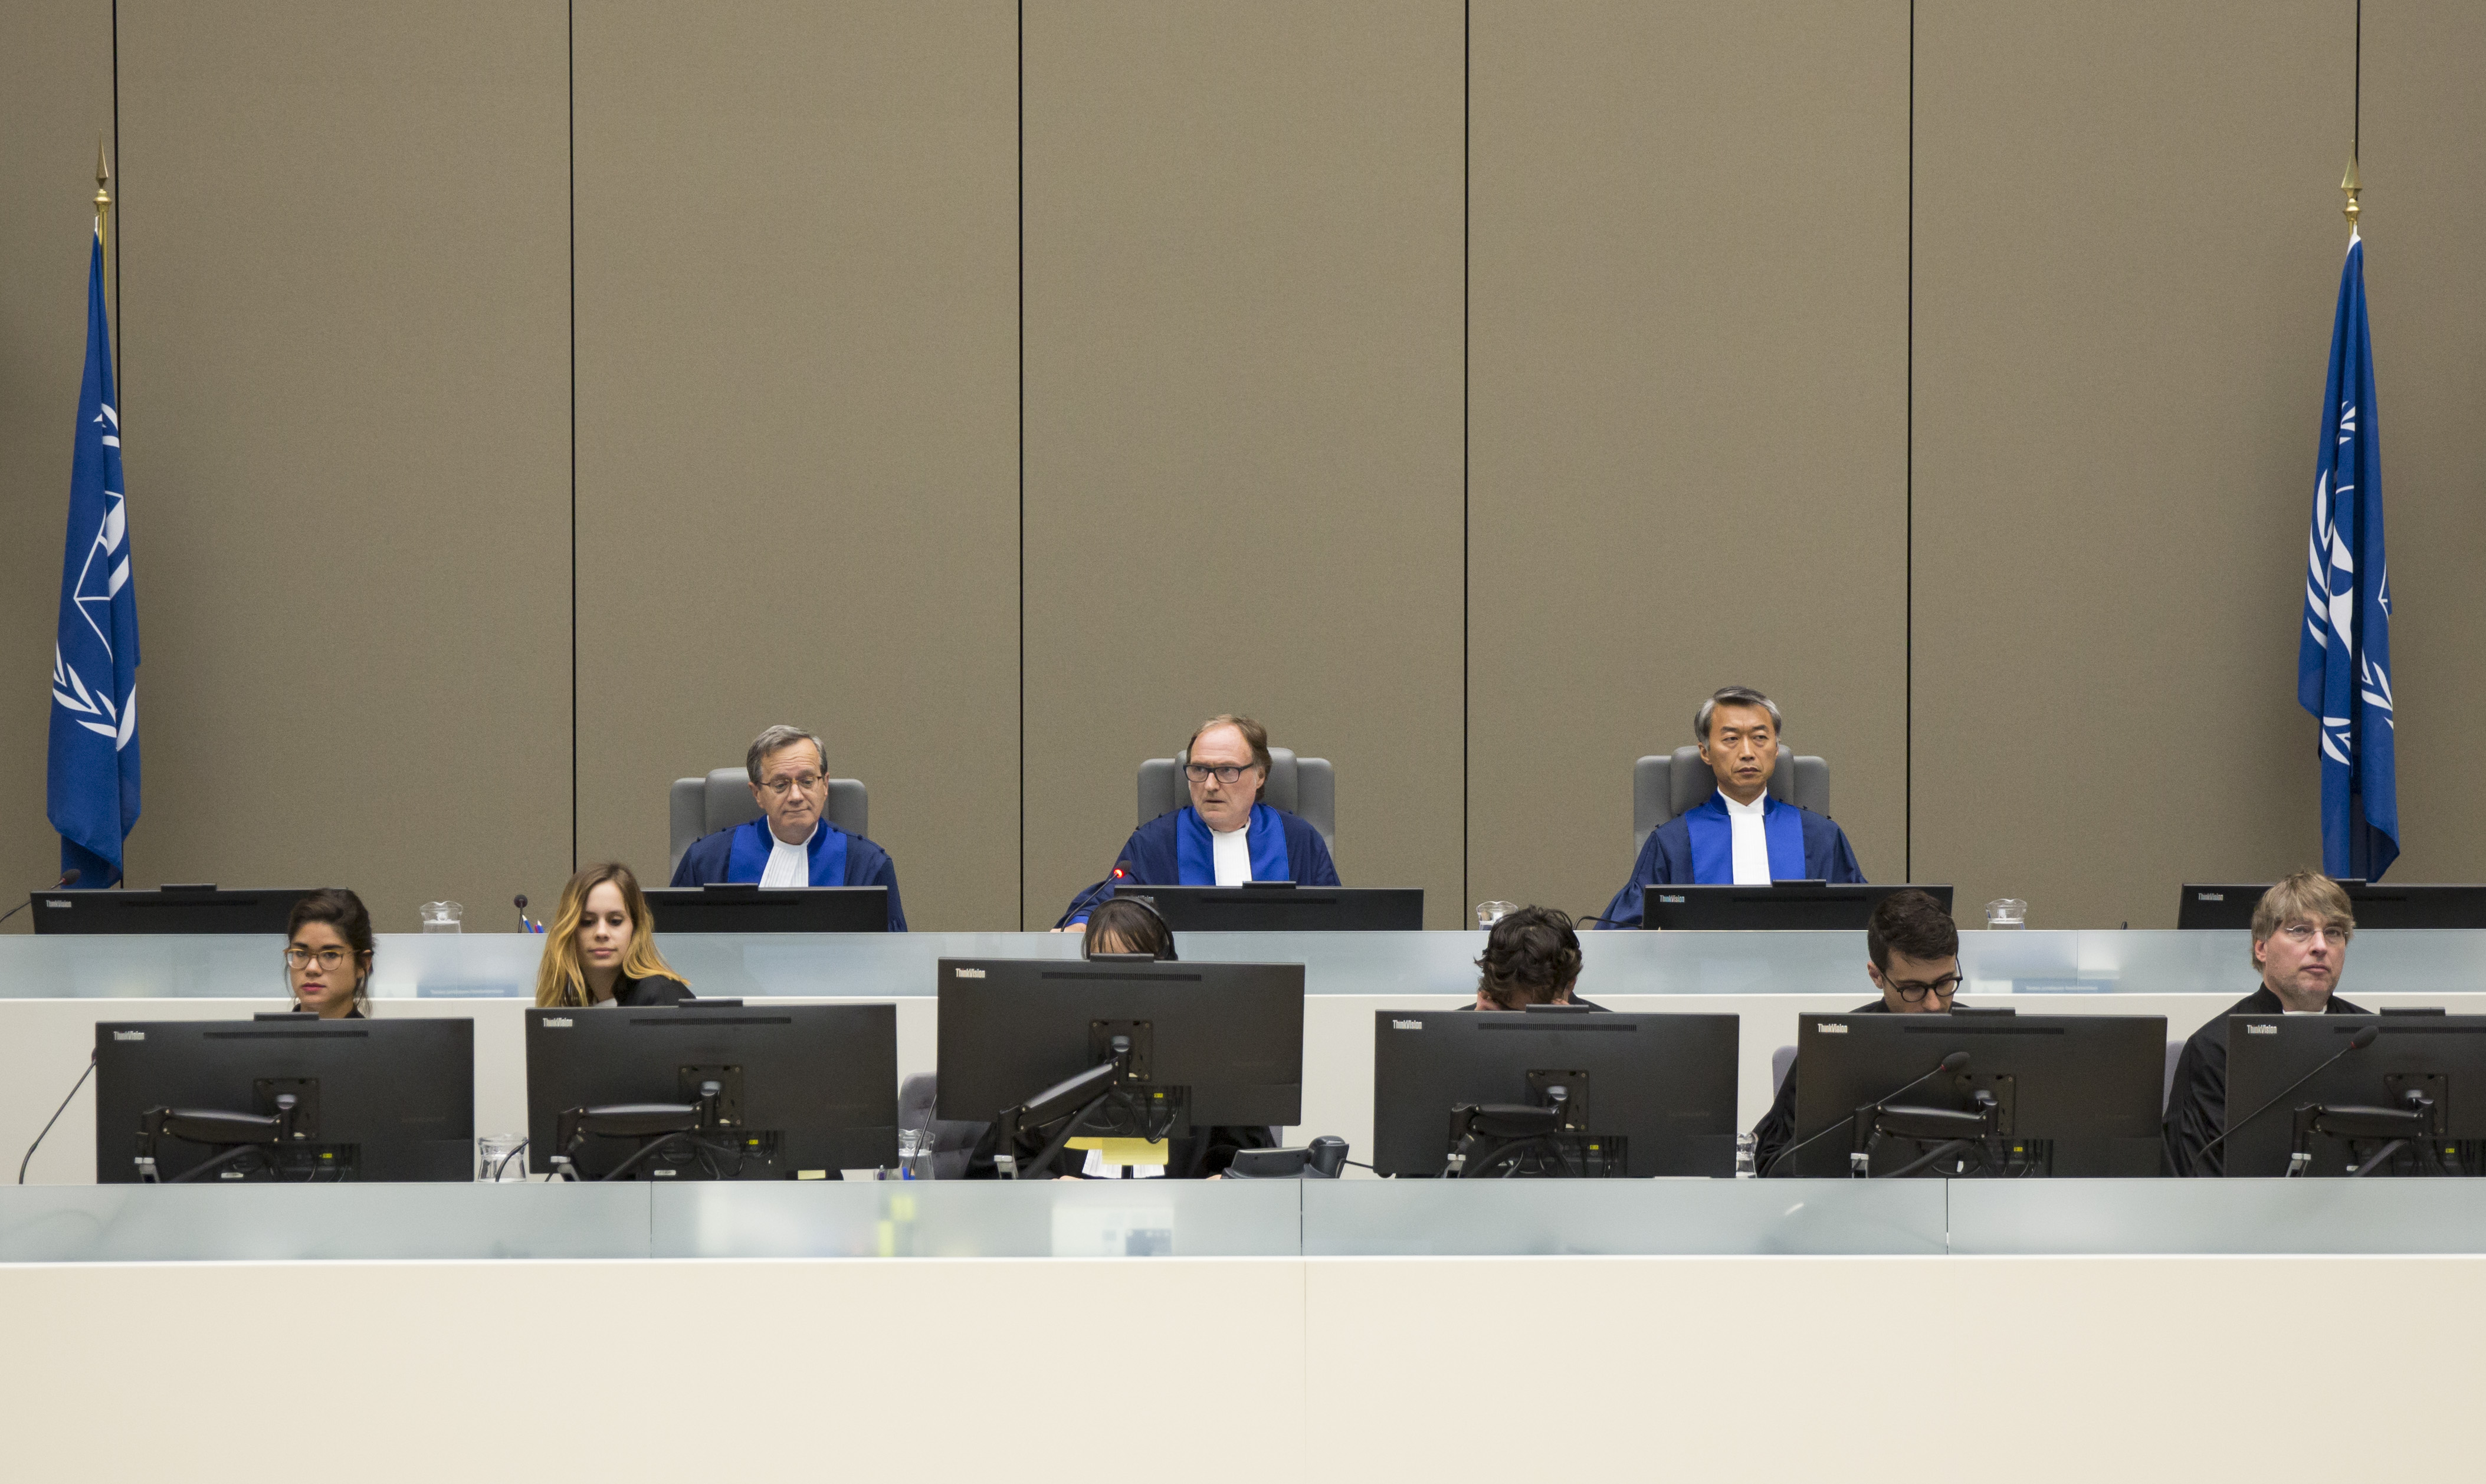 Les juges de la Chambre préliminaire II de la CPI, M. le juge Cuno Tarfusser, président, (au centre) M. le juge Chang-ho Chung (à droite) et M. le juge Marc Perrin de Brichambaut (à gauche), lors de l'audience du 6 juillet 2017 à La Haye, aux Pays-Bas. ©ICC-CPI 